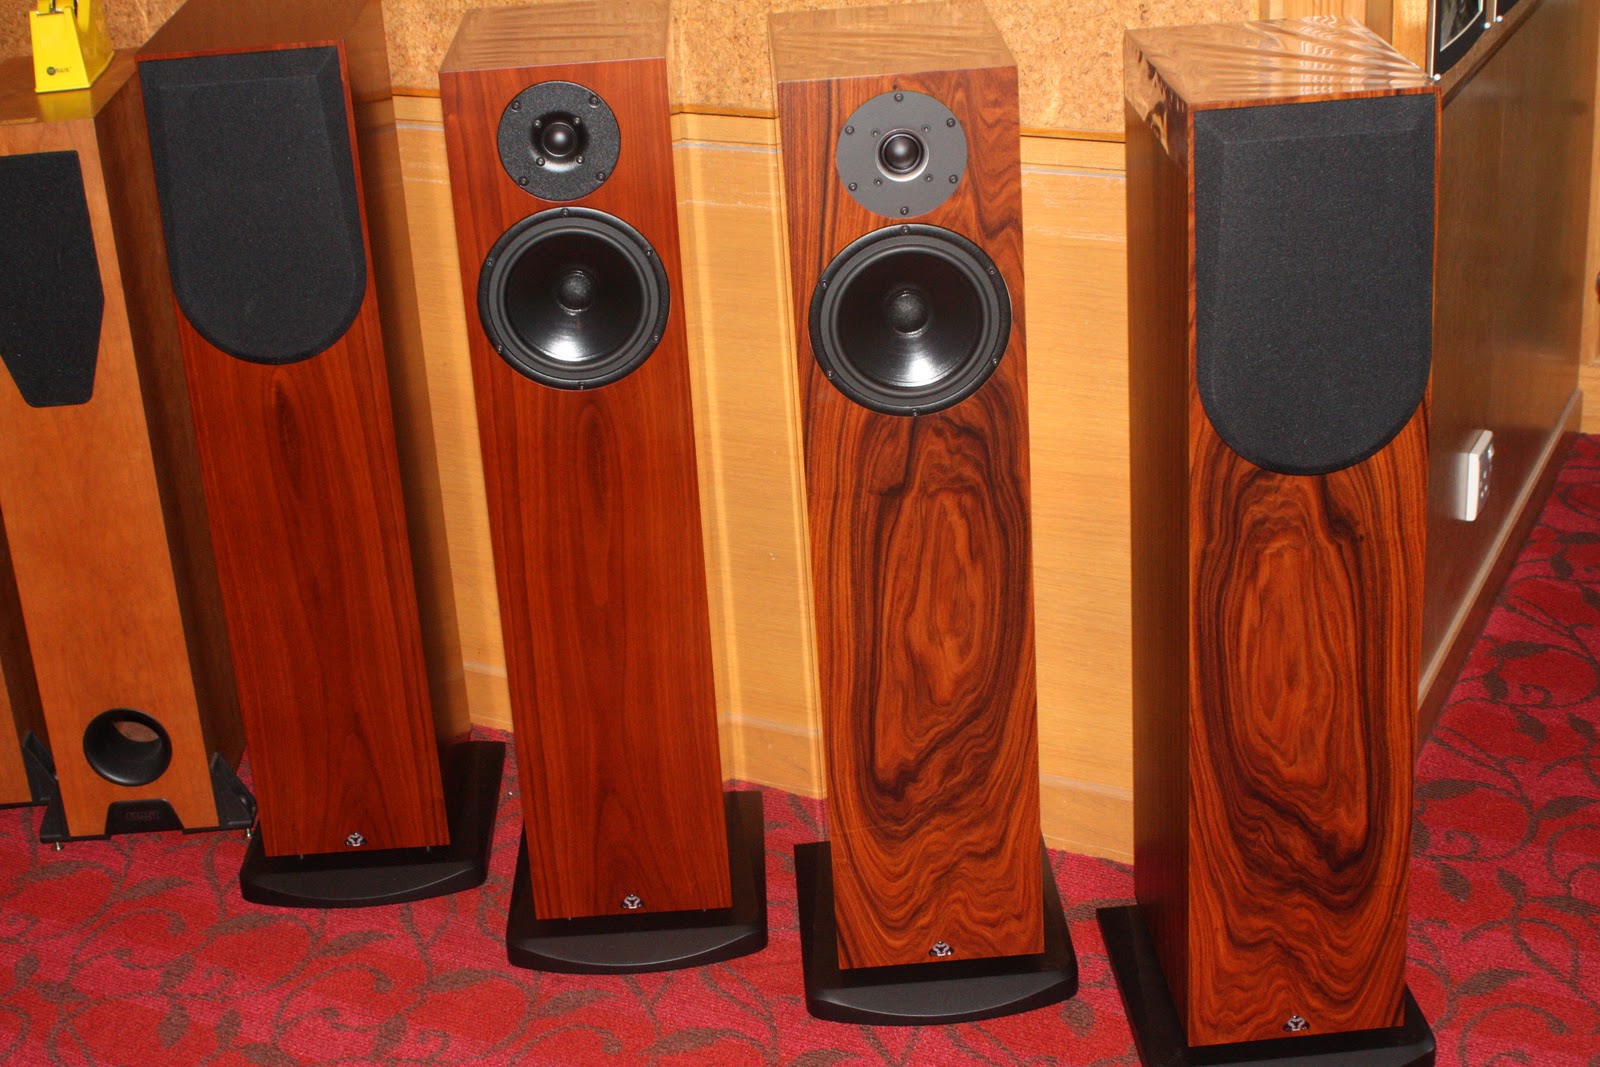 zu-and-kudos-speakers